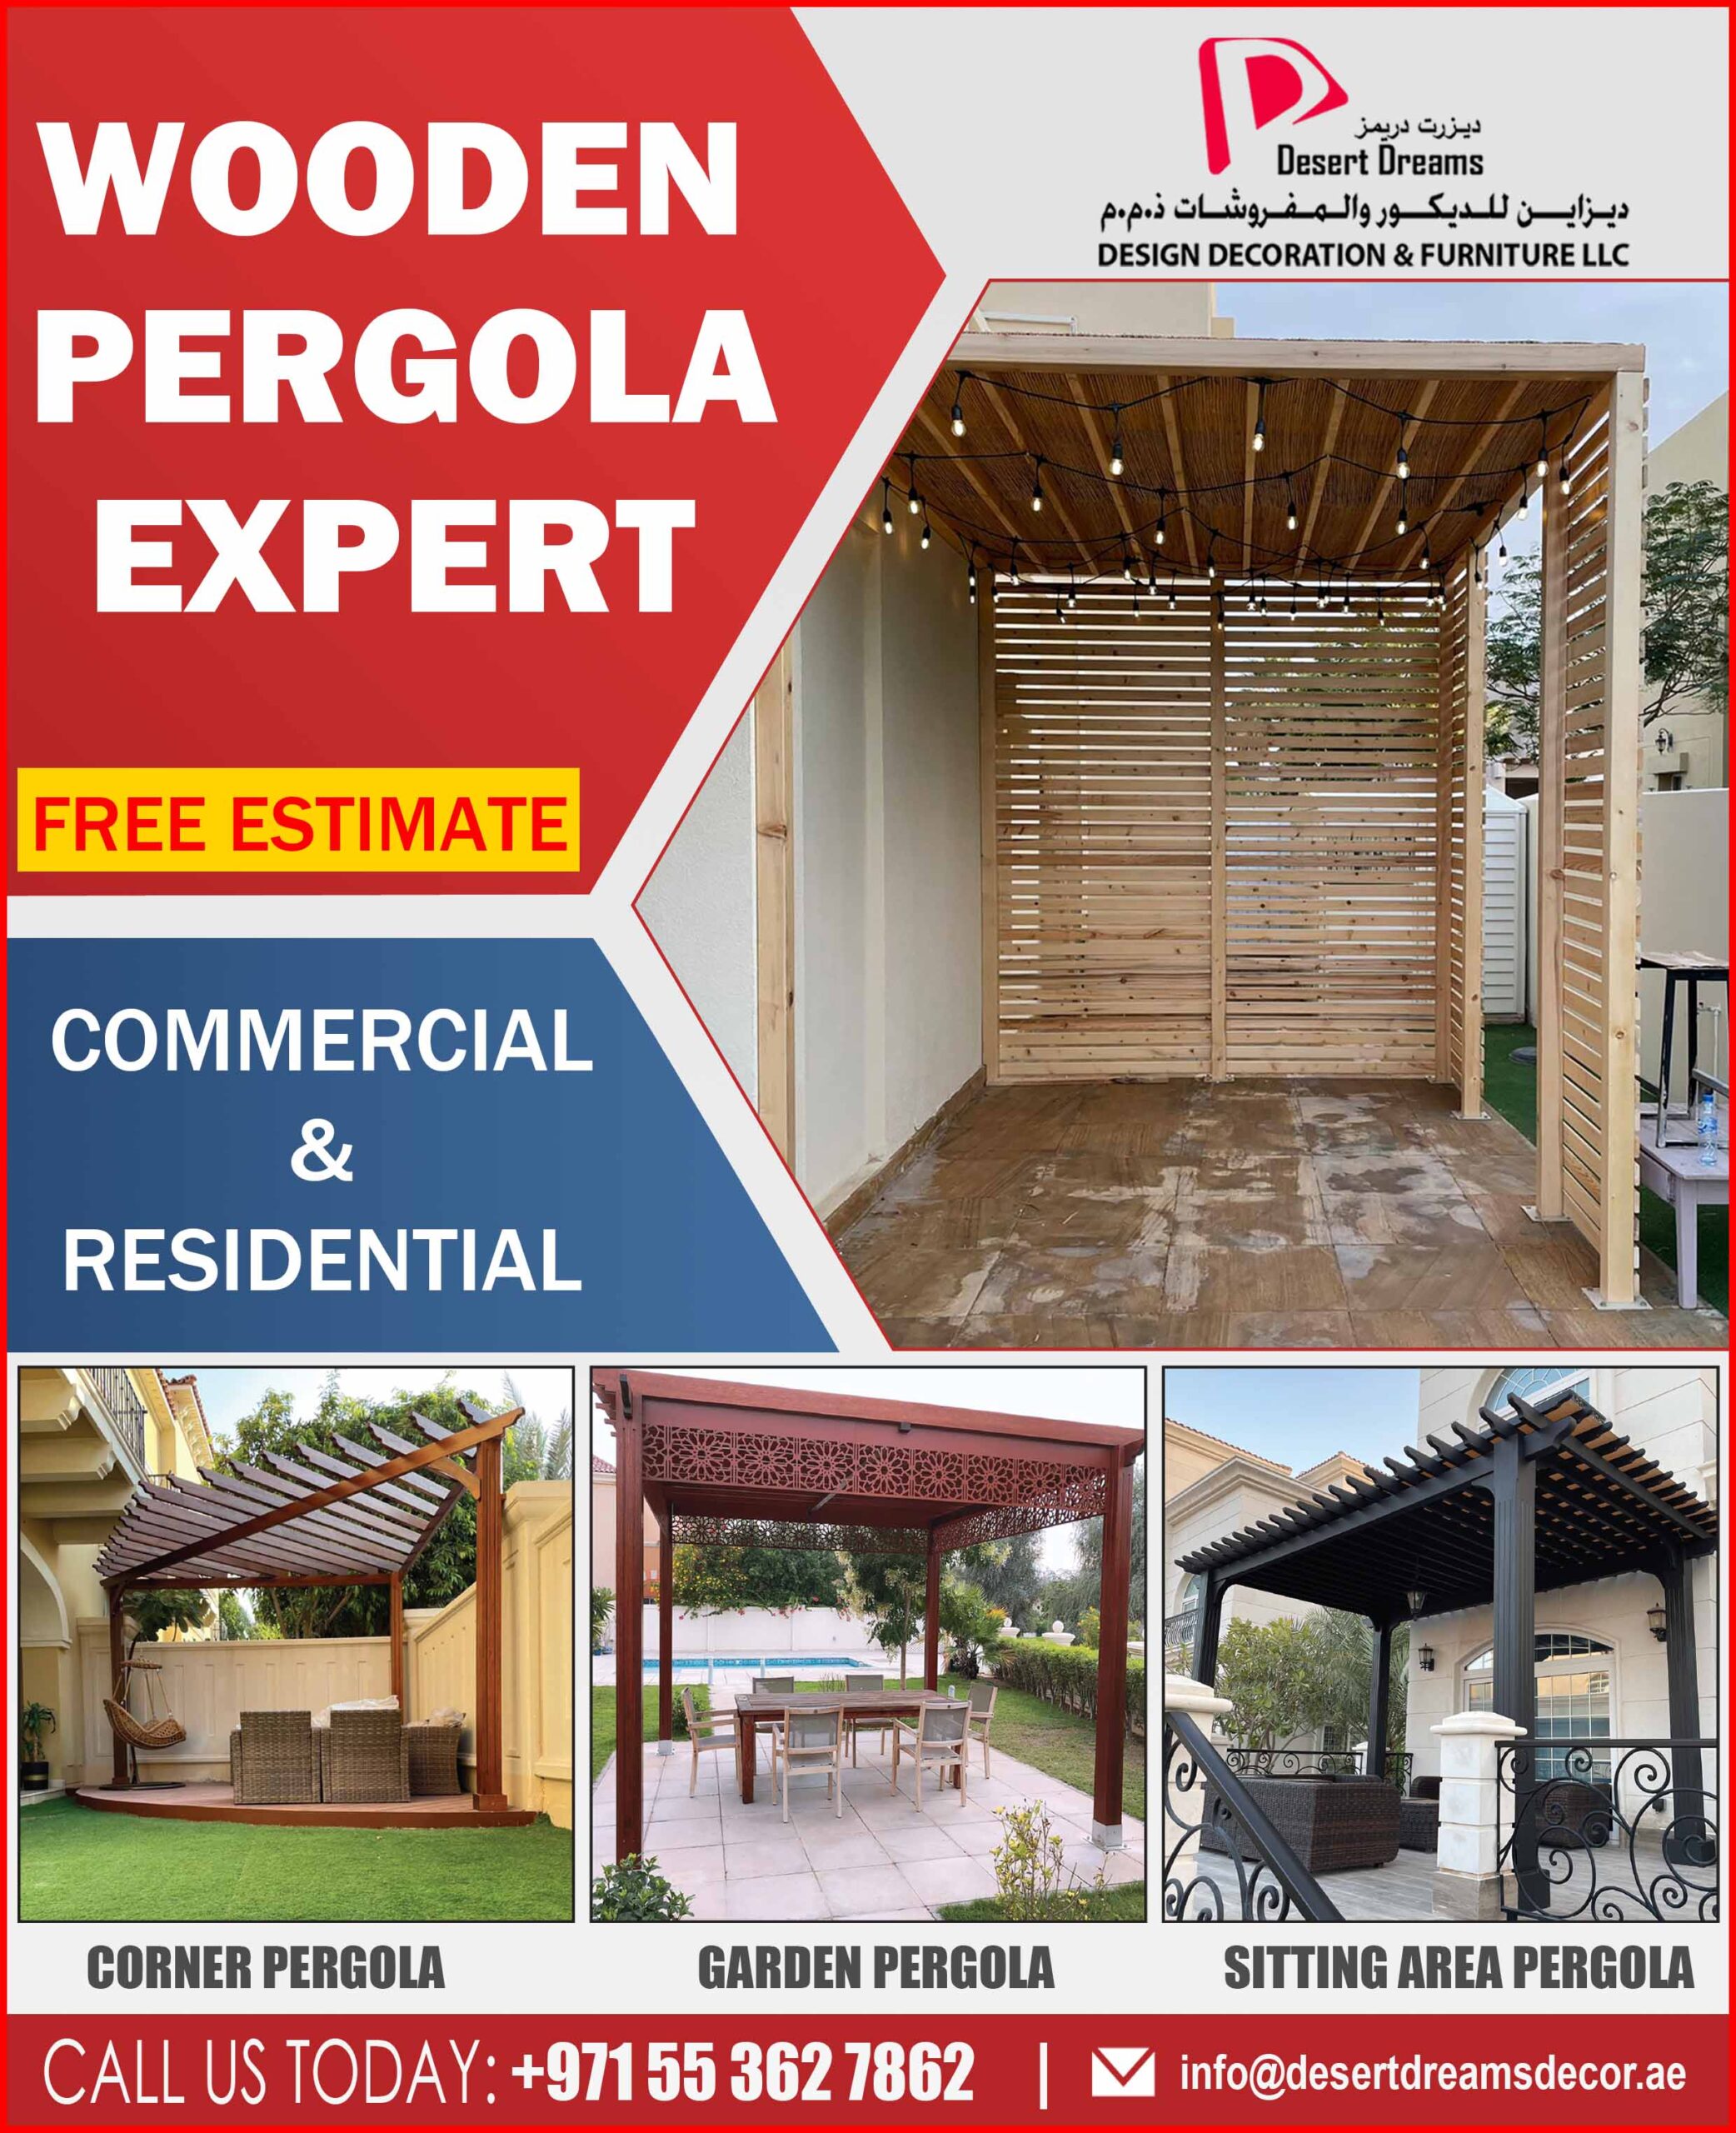 Wooden Pergola Expert in Dubai_Pergola Uae_Pergola_Pergola Al Ain.jpg